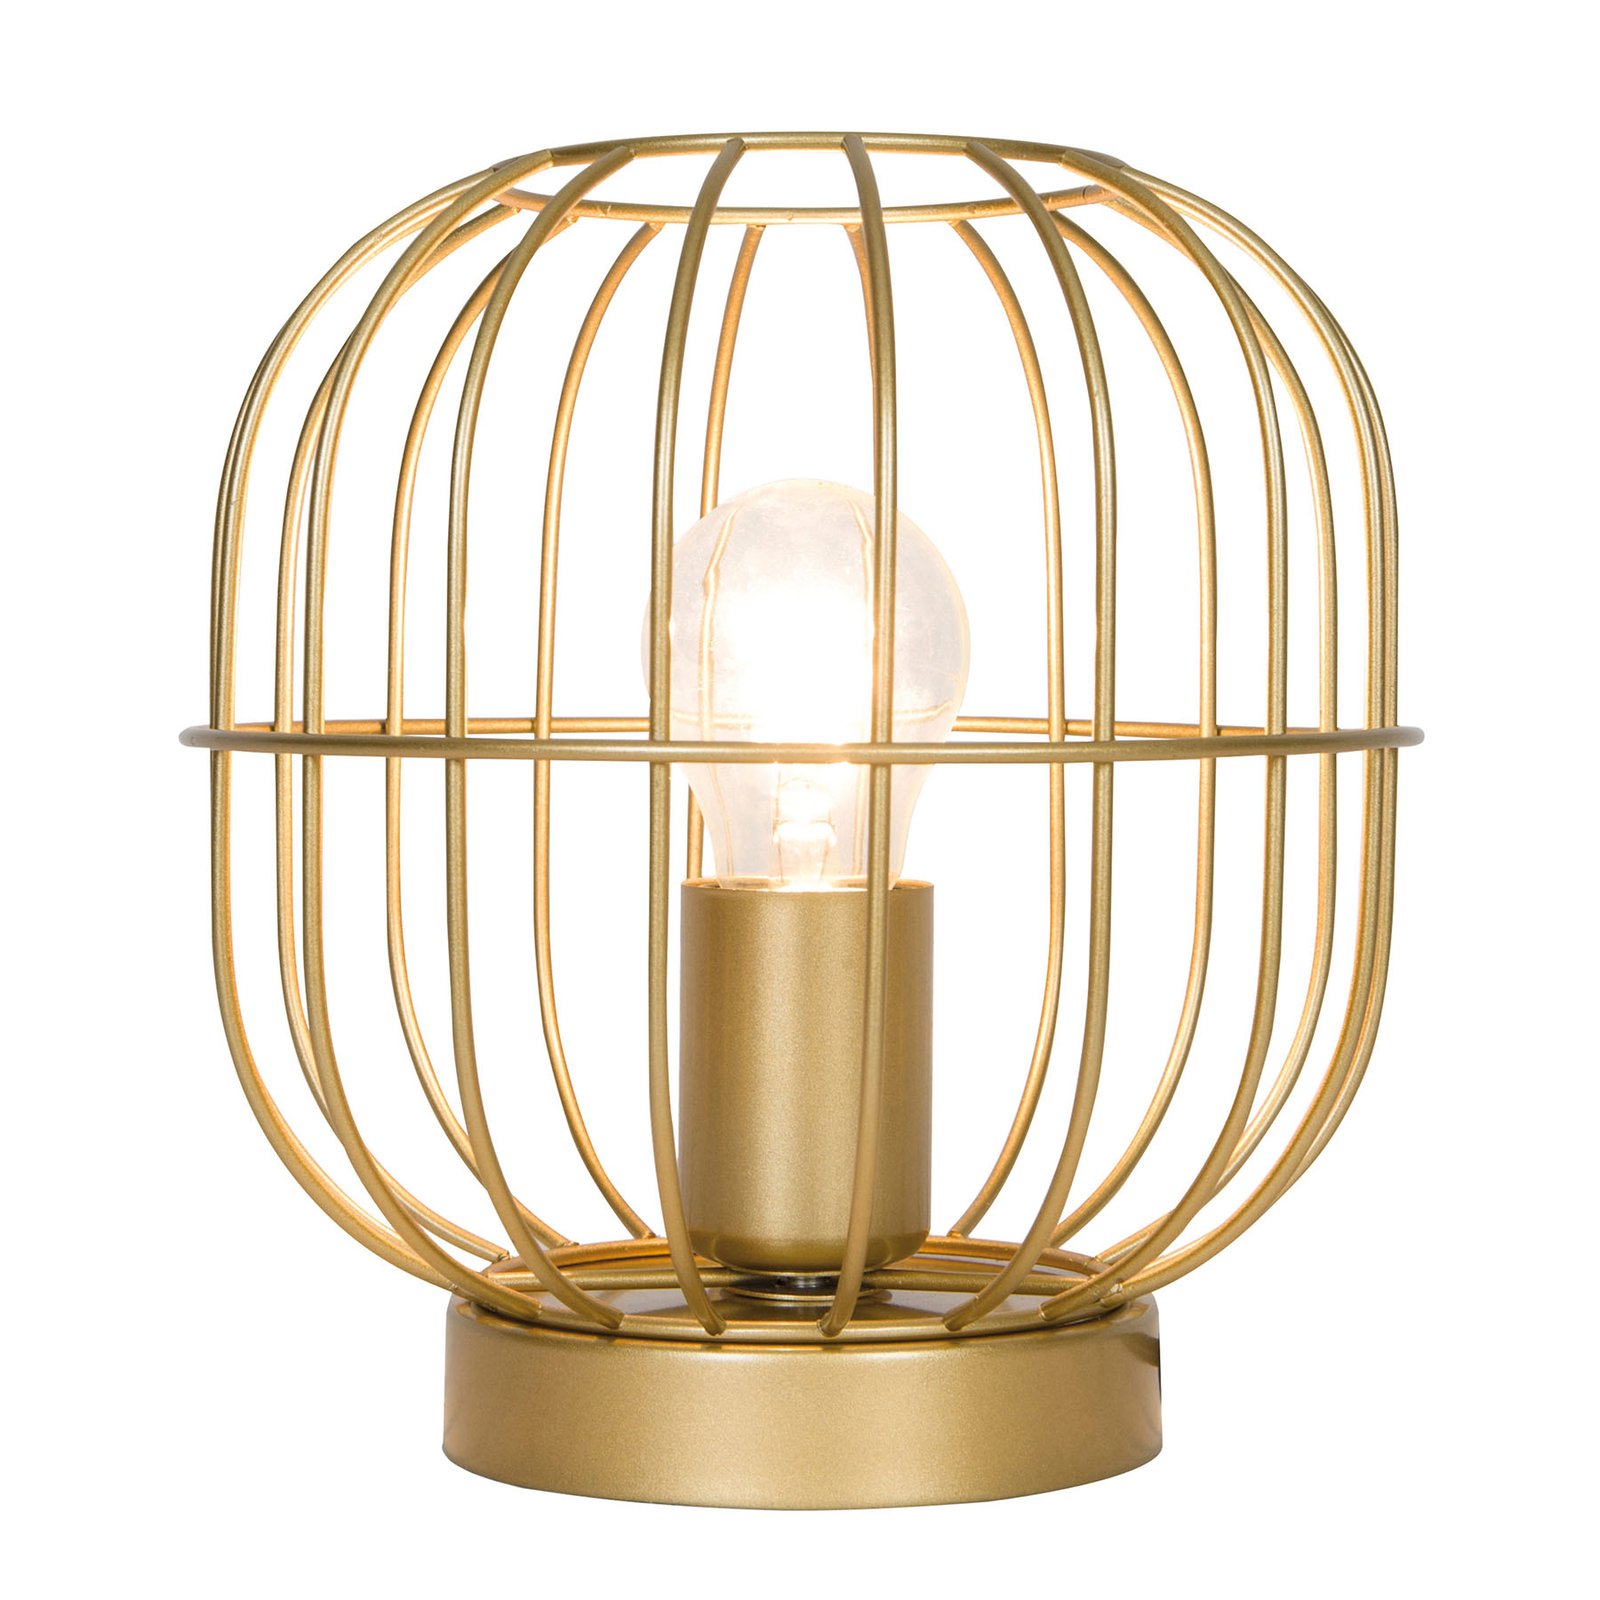 Lampa stołowa Zenith w kształcie klatki, złota